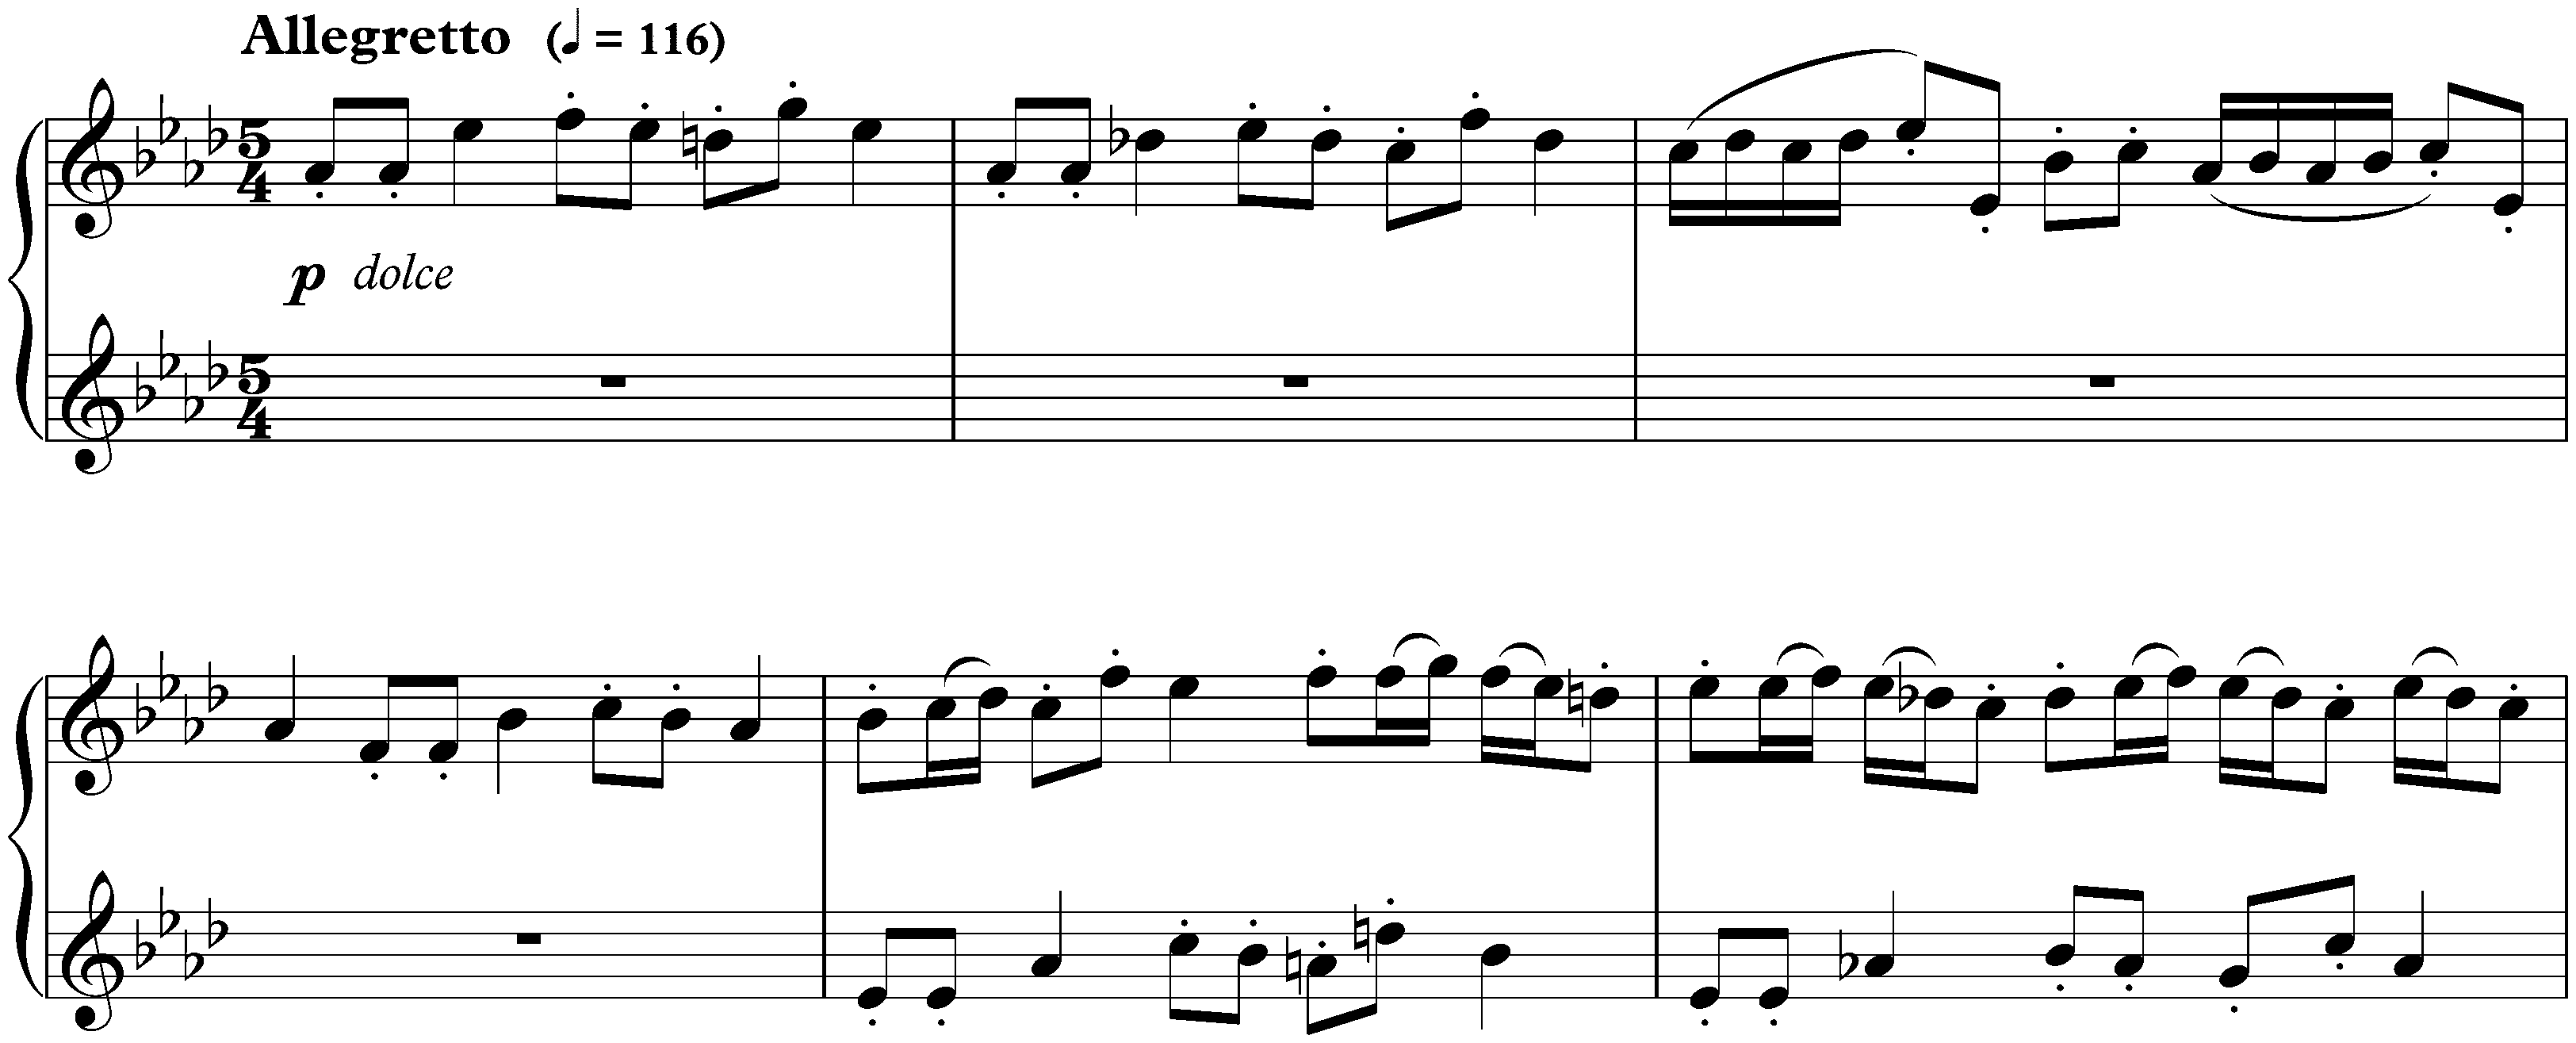 Twenty-four Preludes and Fugues, op. 87; 17. A-flat major, Fugue